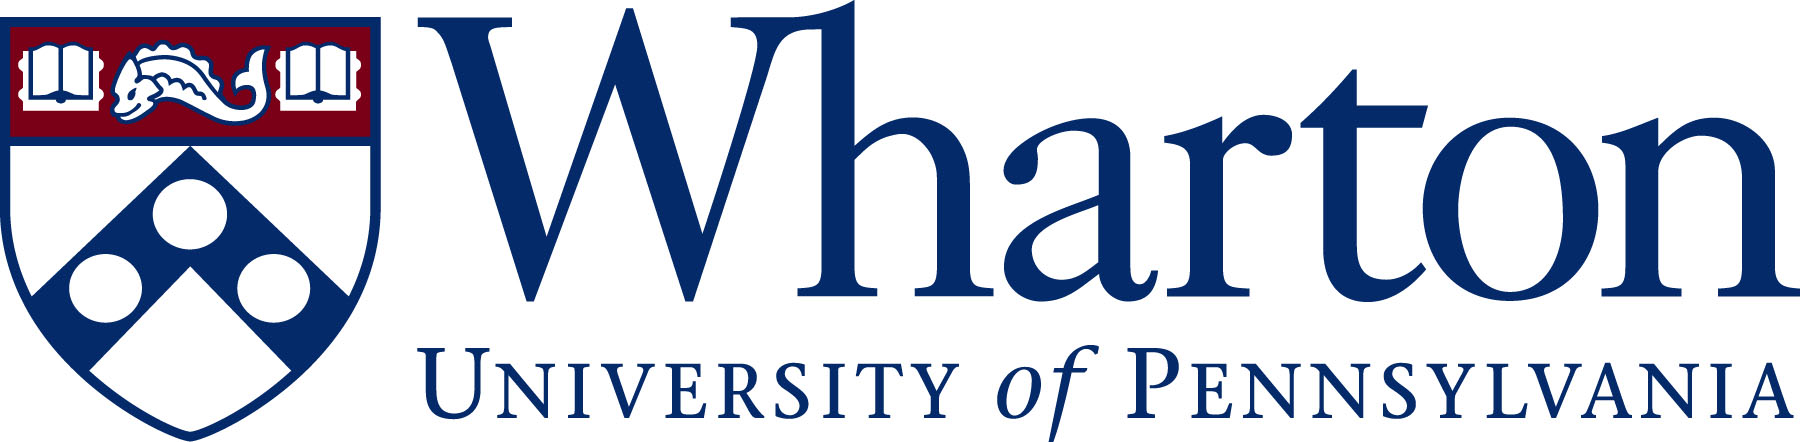 Wharton School Logo photo - 1